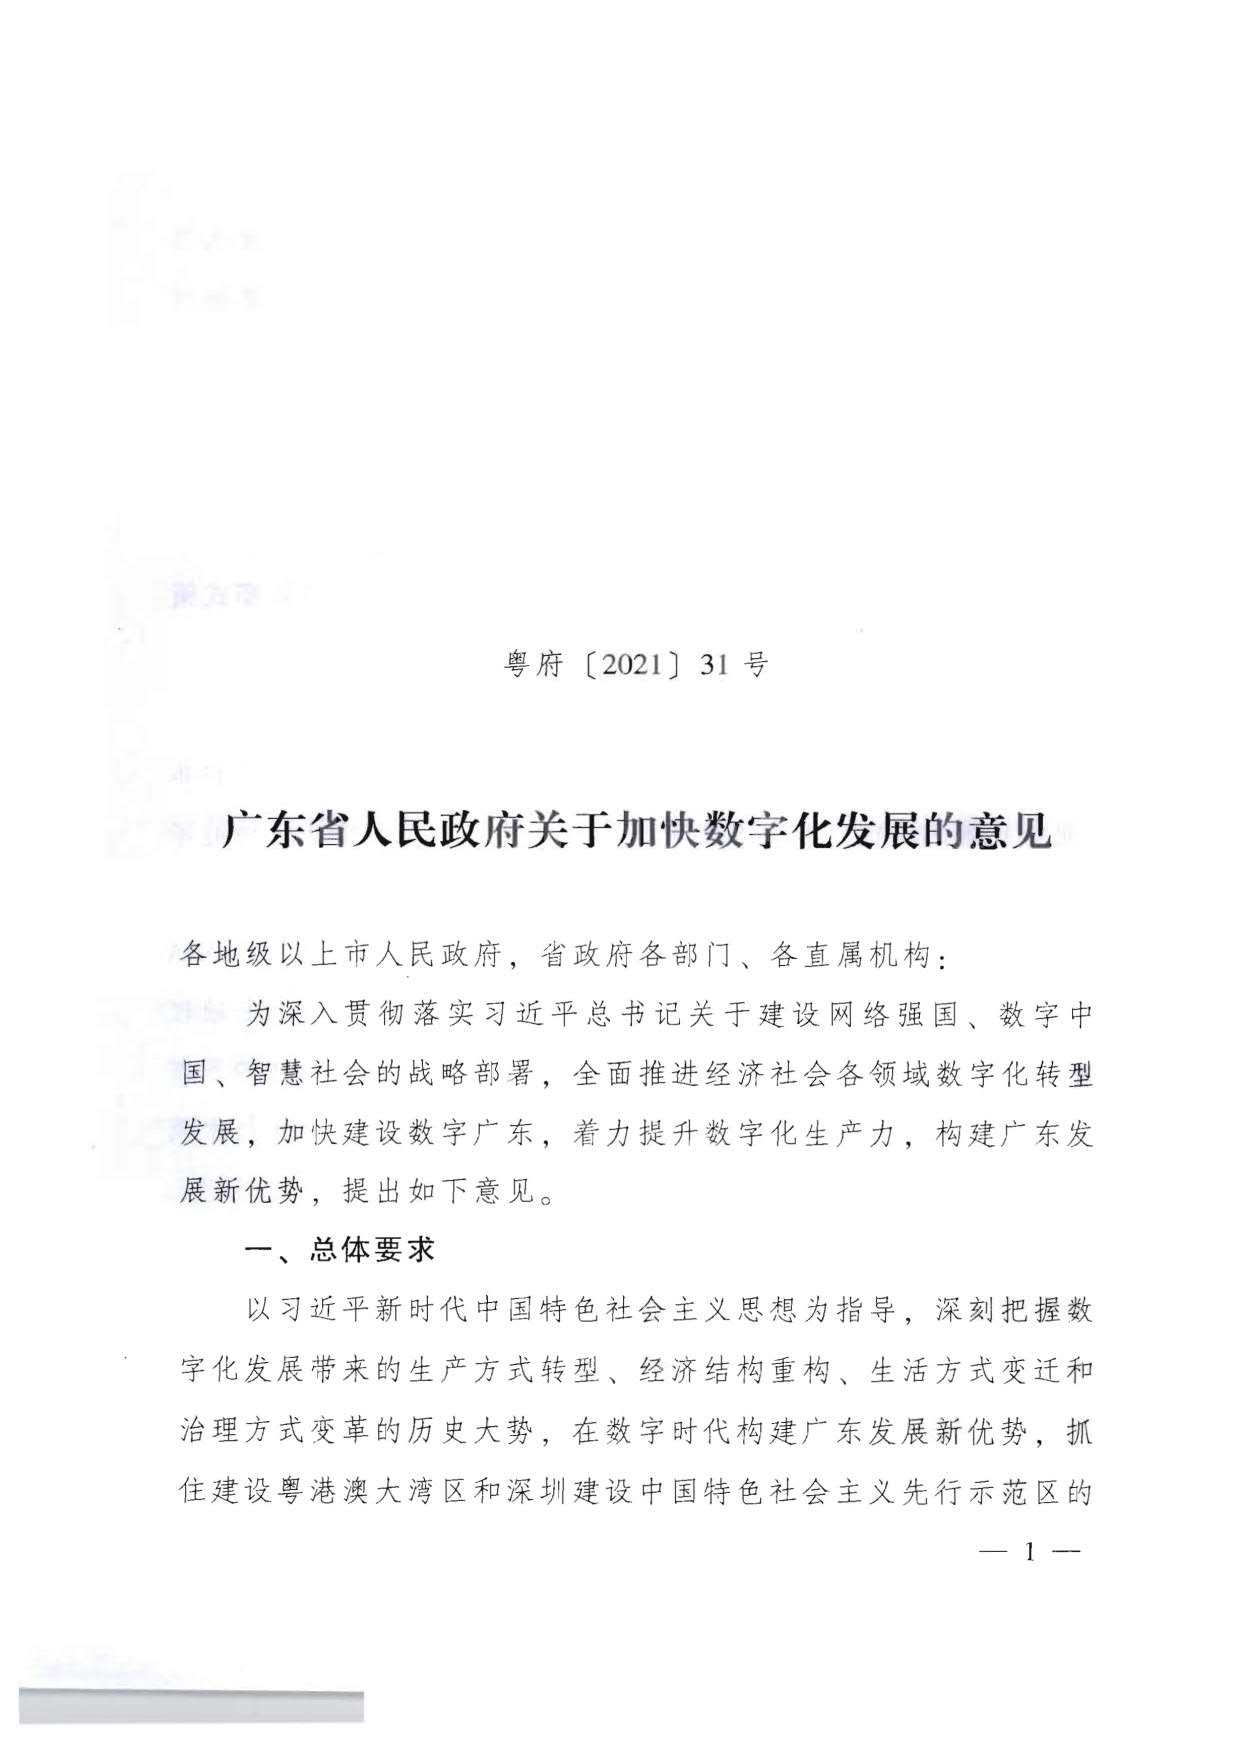 广东省人民政府关于加快数字化发展的意见_01.jpg